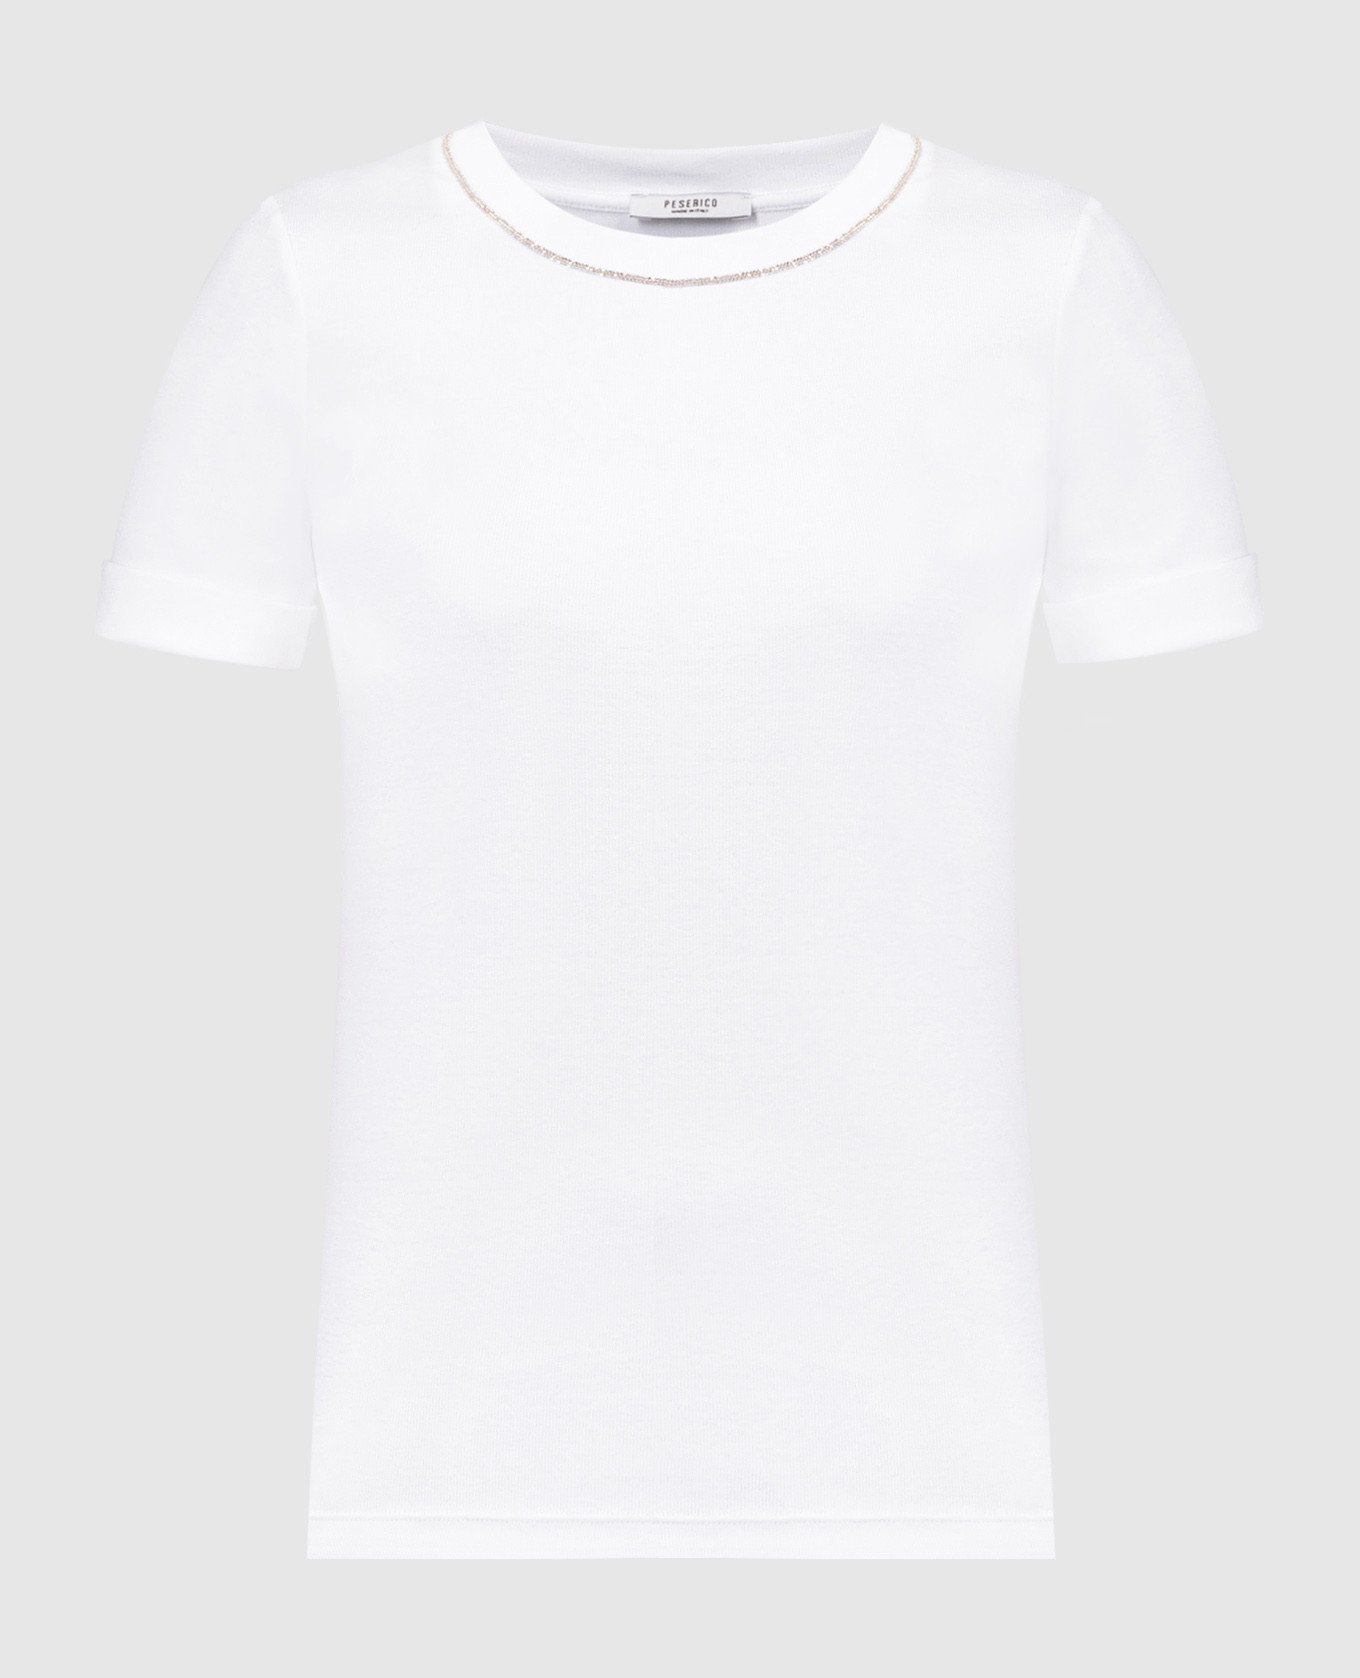 T-shirt white with monil chain